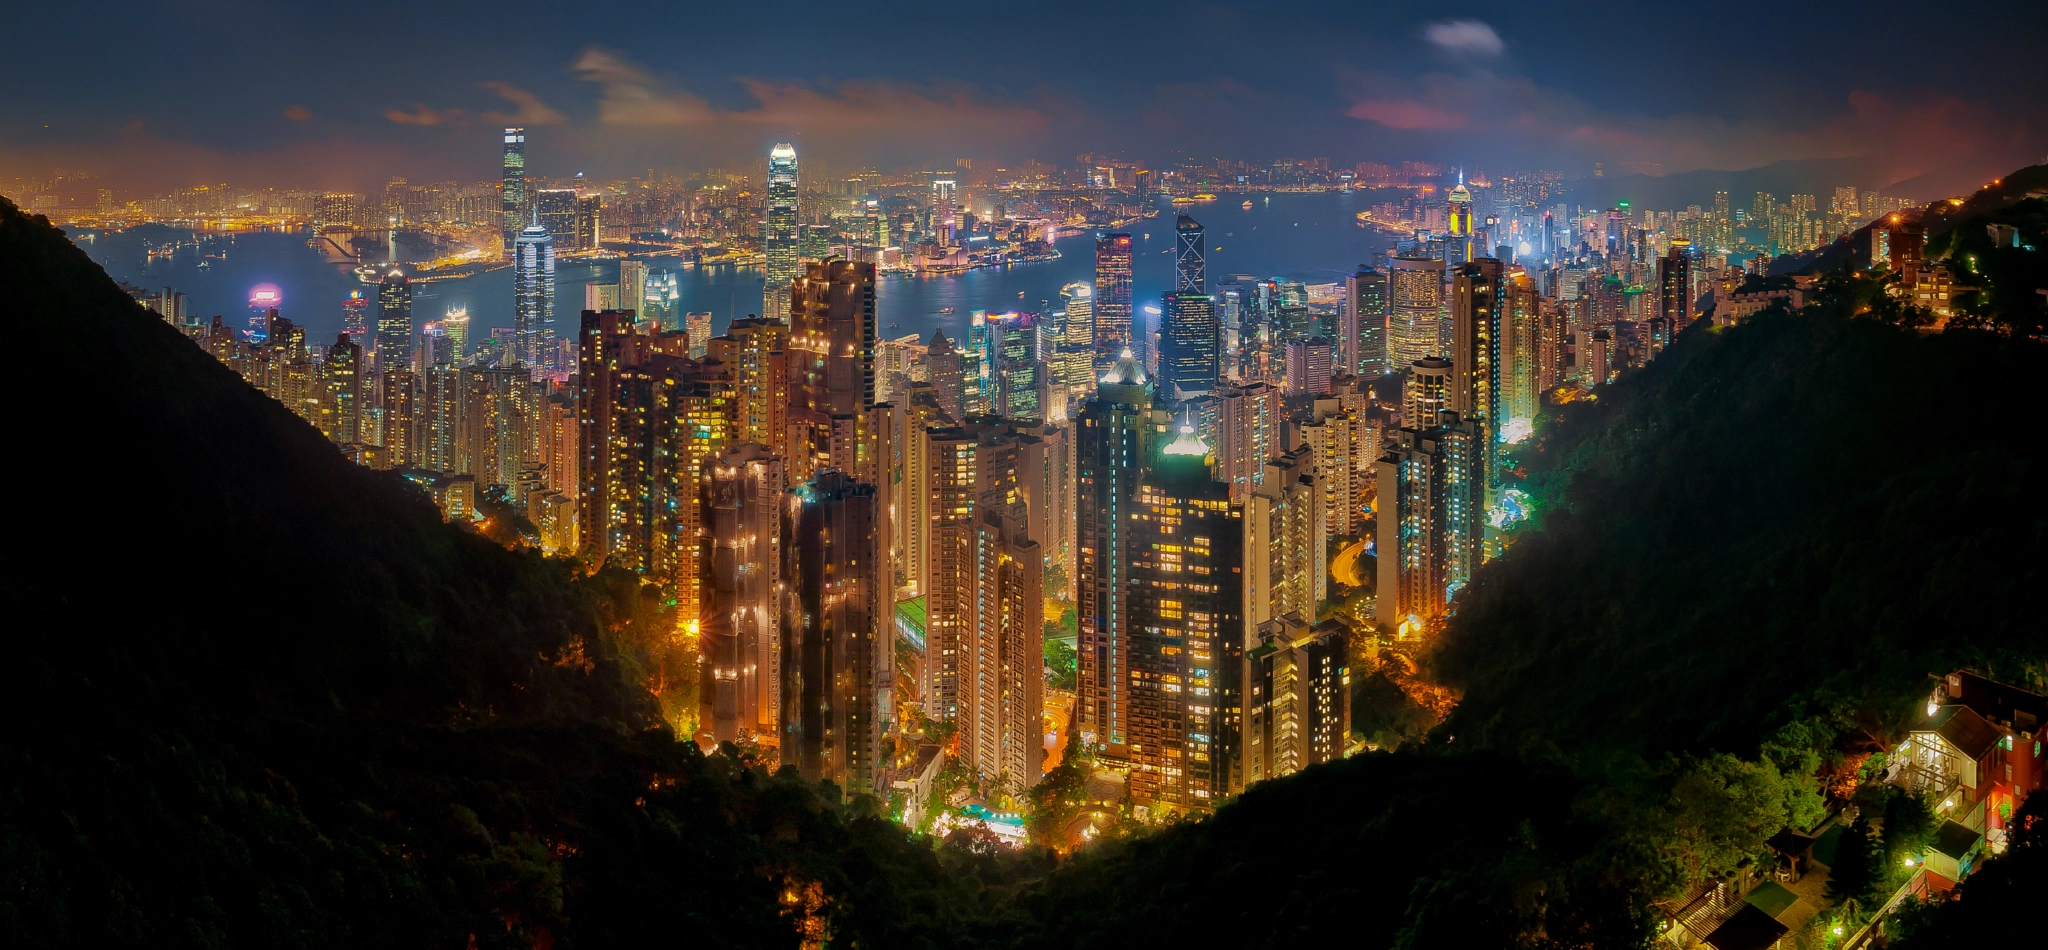 Good Night Hong Kong